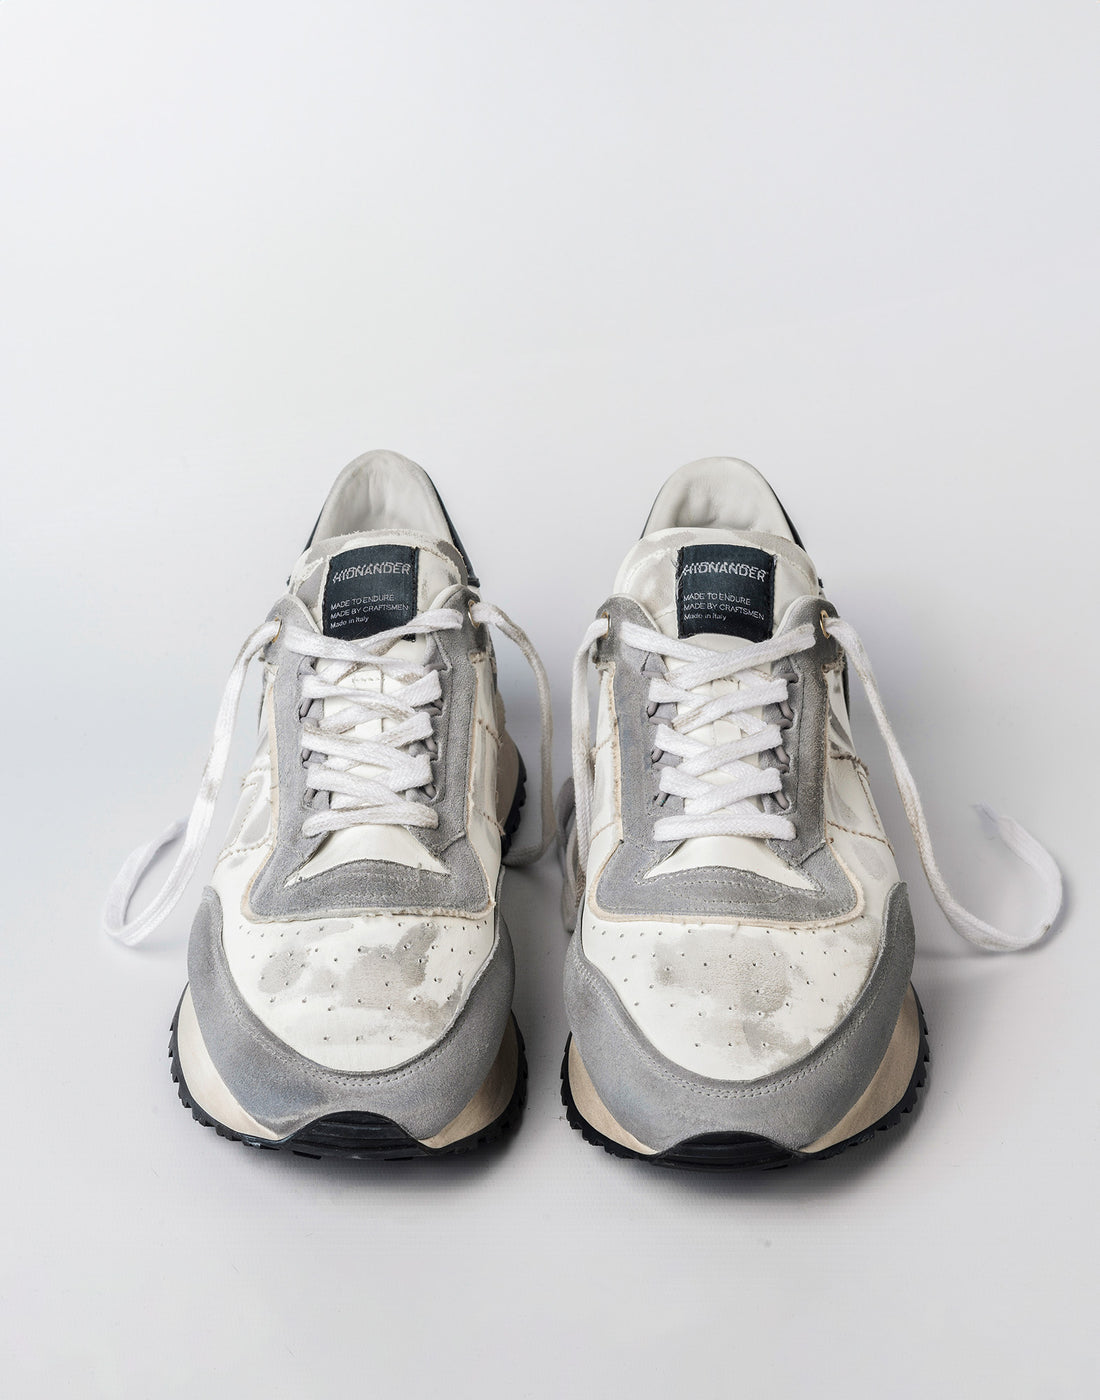 HIDNANDER Sneakers Tenkei Steel Grey/Black